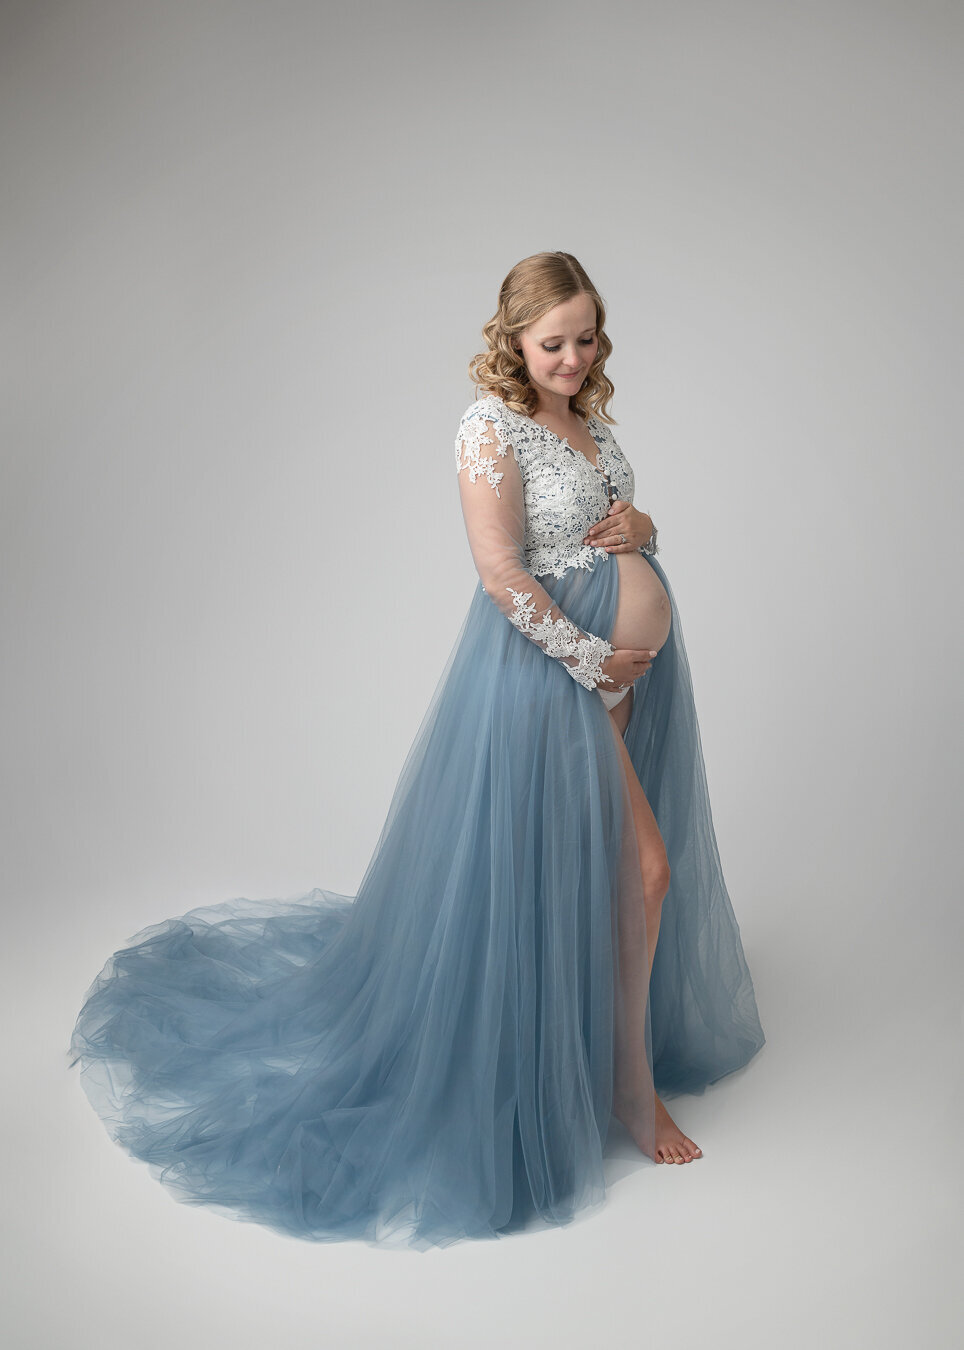 fine-art maternity portrait of woman in blue gown